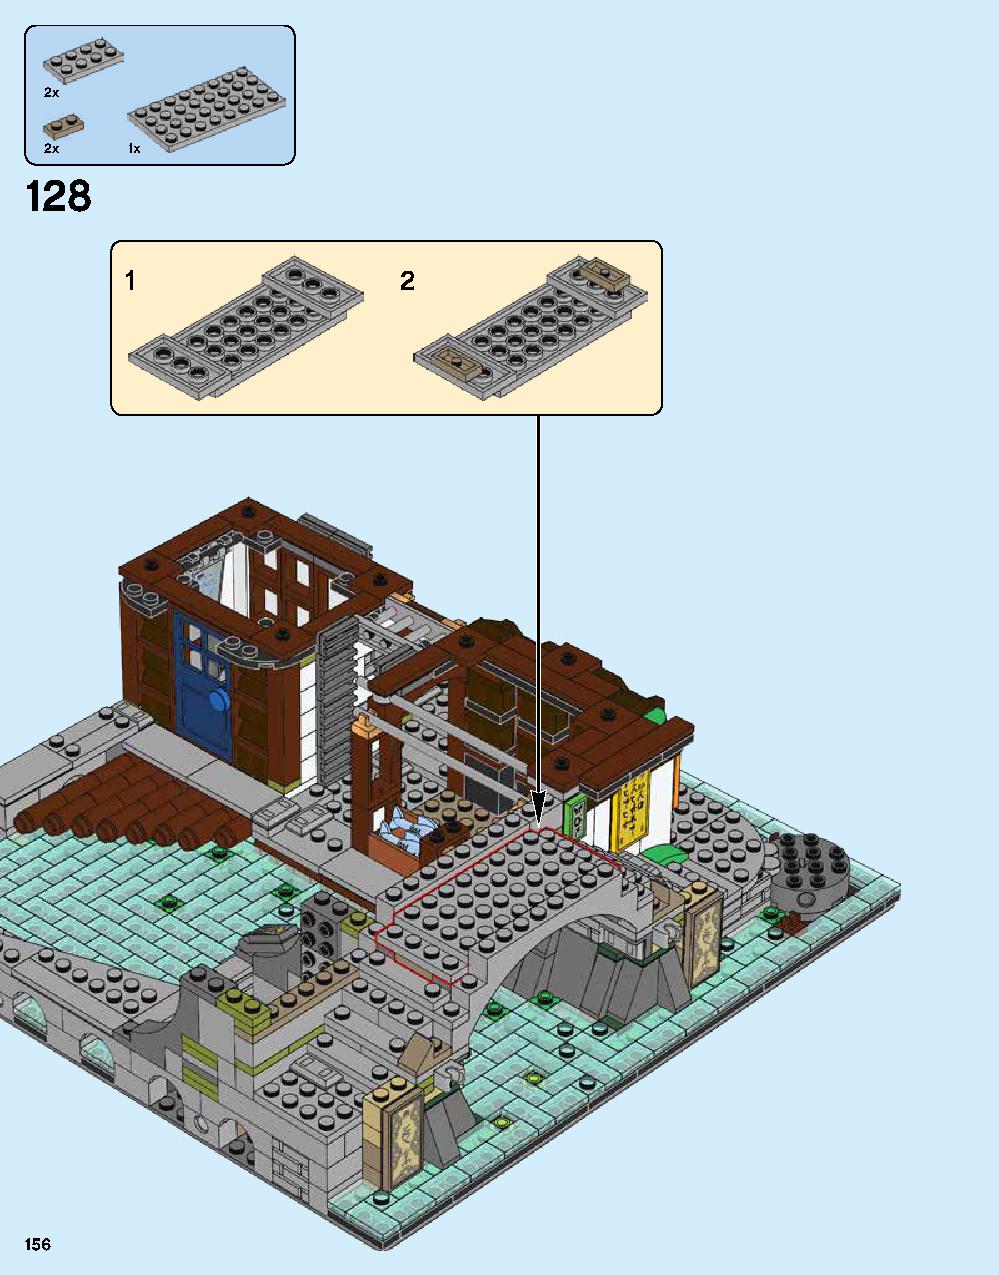 ニンジャゴー シティ 70620 レゴの商品情報 レゴの説明書・組立方法 156 page